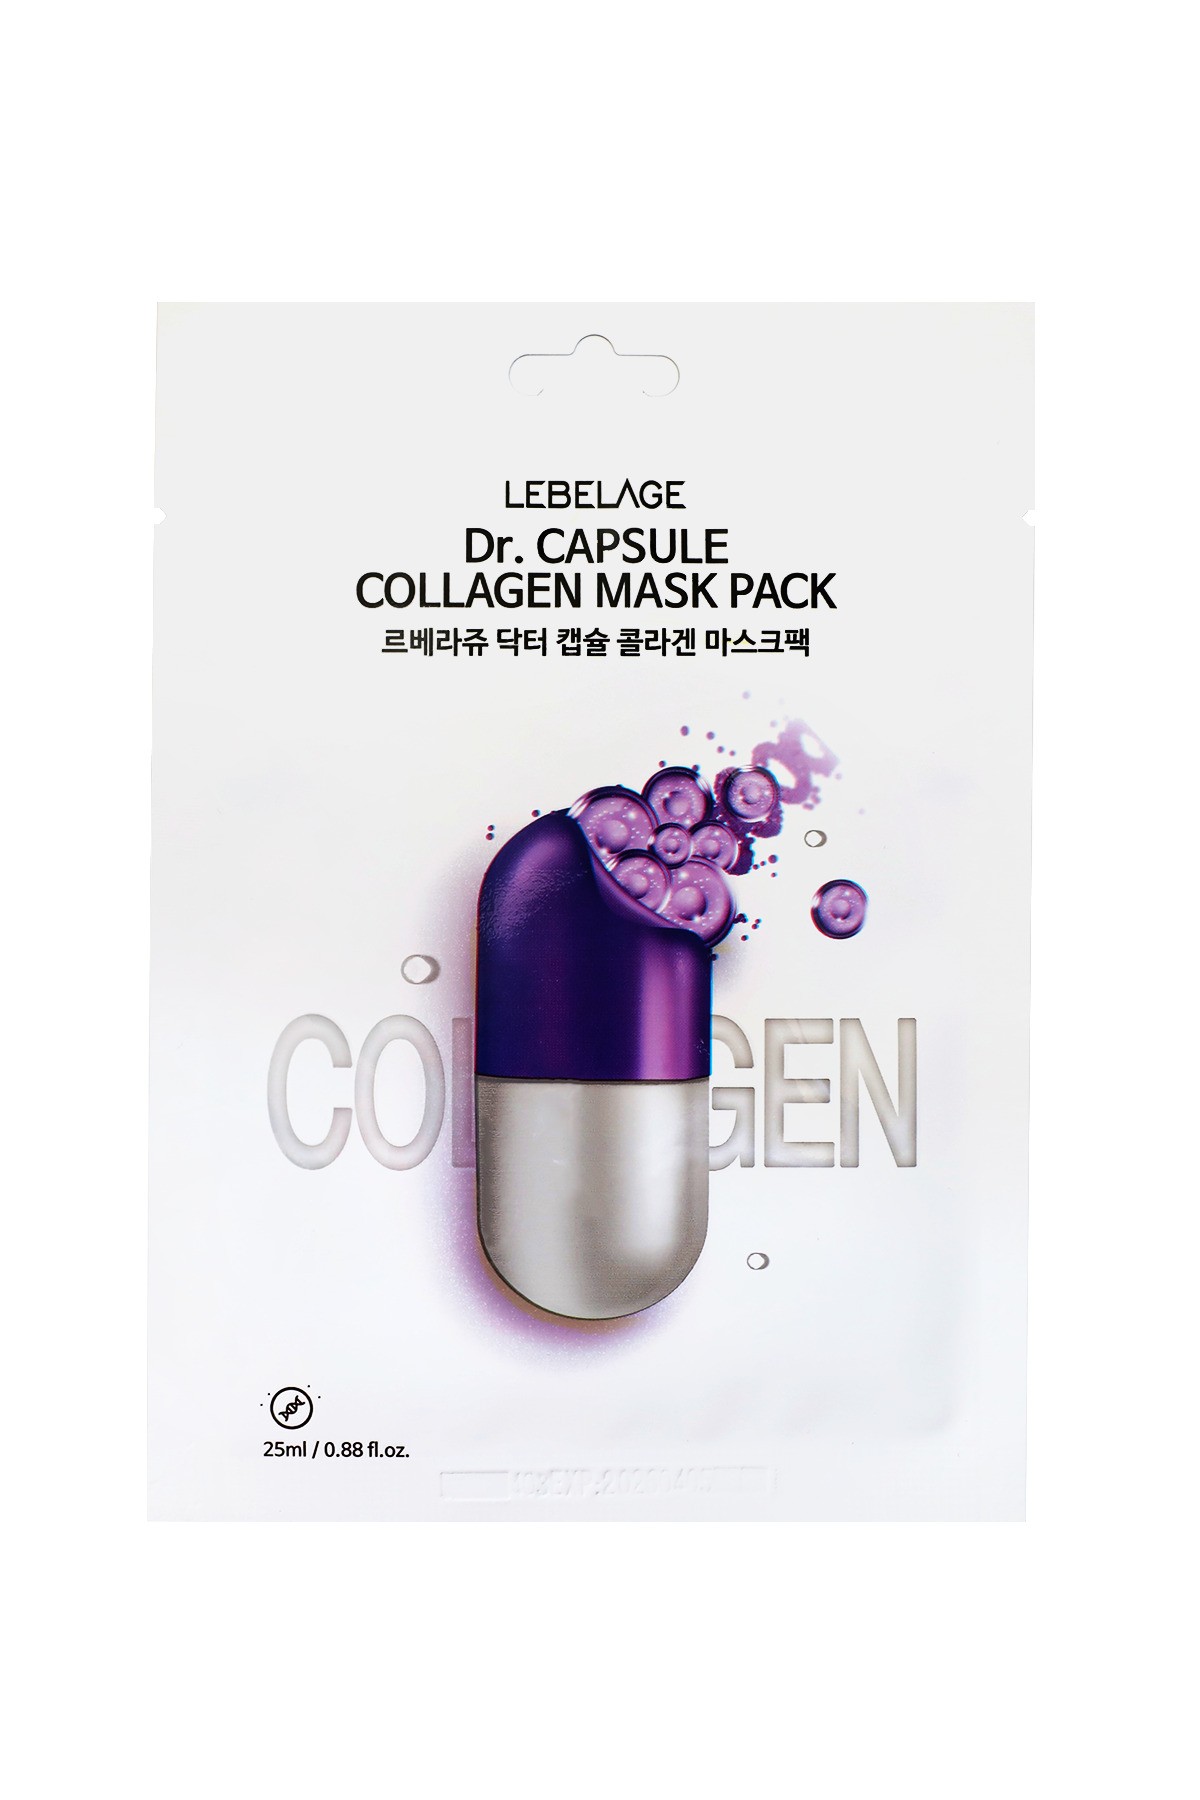 Yaşlanma Karşıtı Kapsül Kolajen Kağıt Maske Lebelage Dr. Capsule Collagen Mask Pack